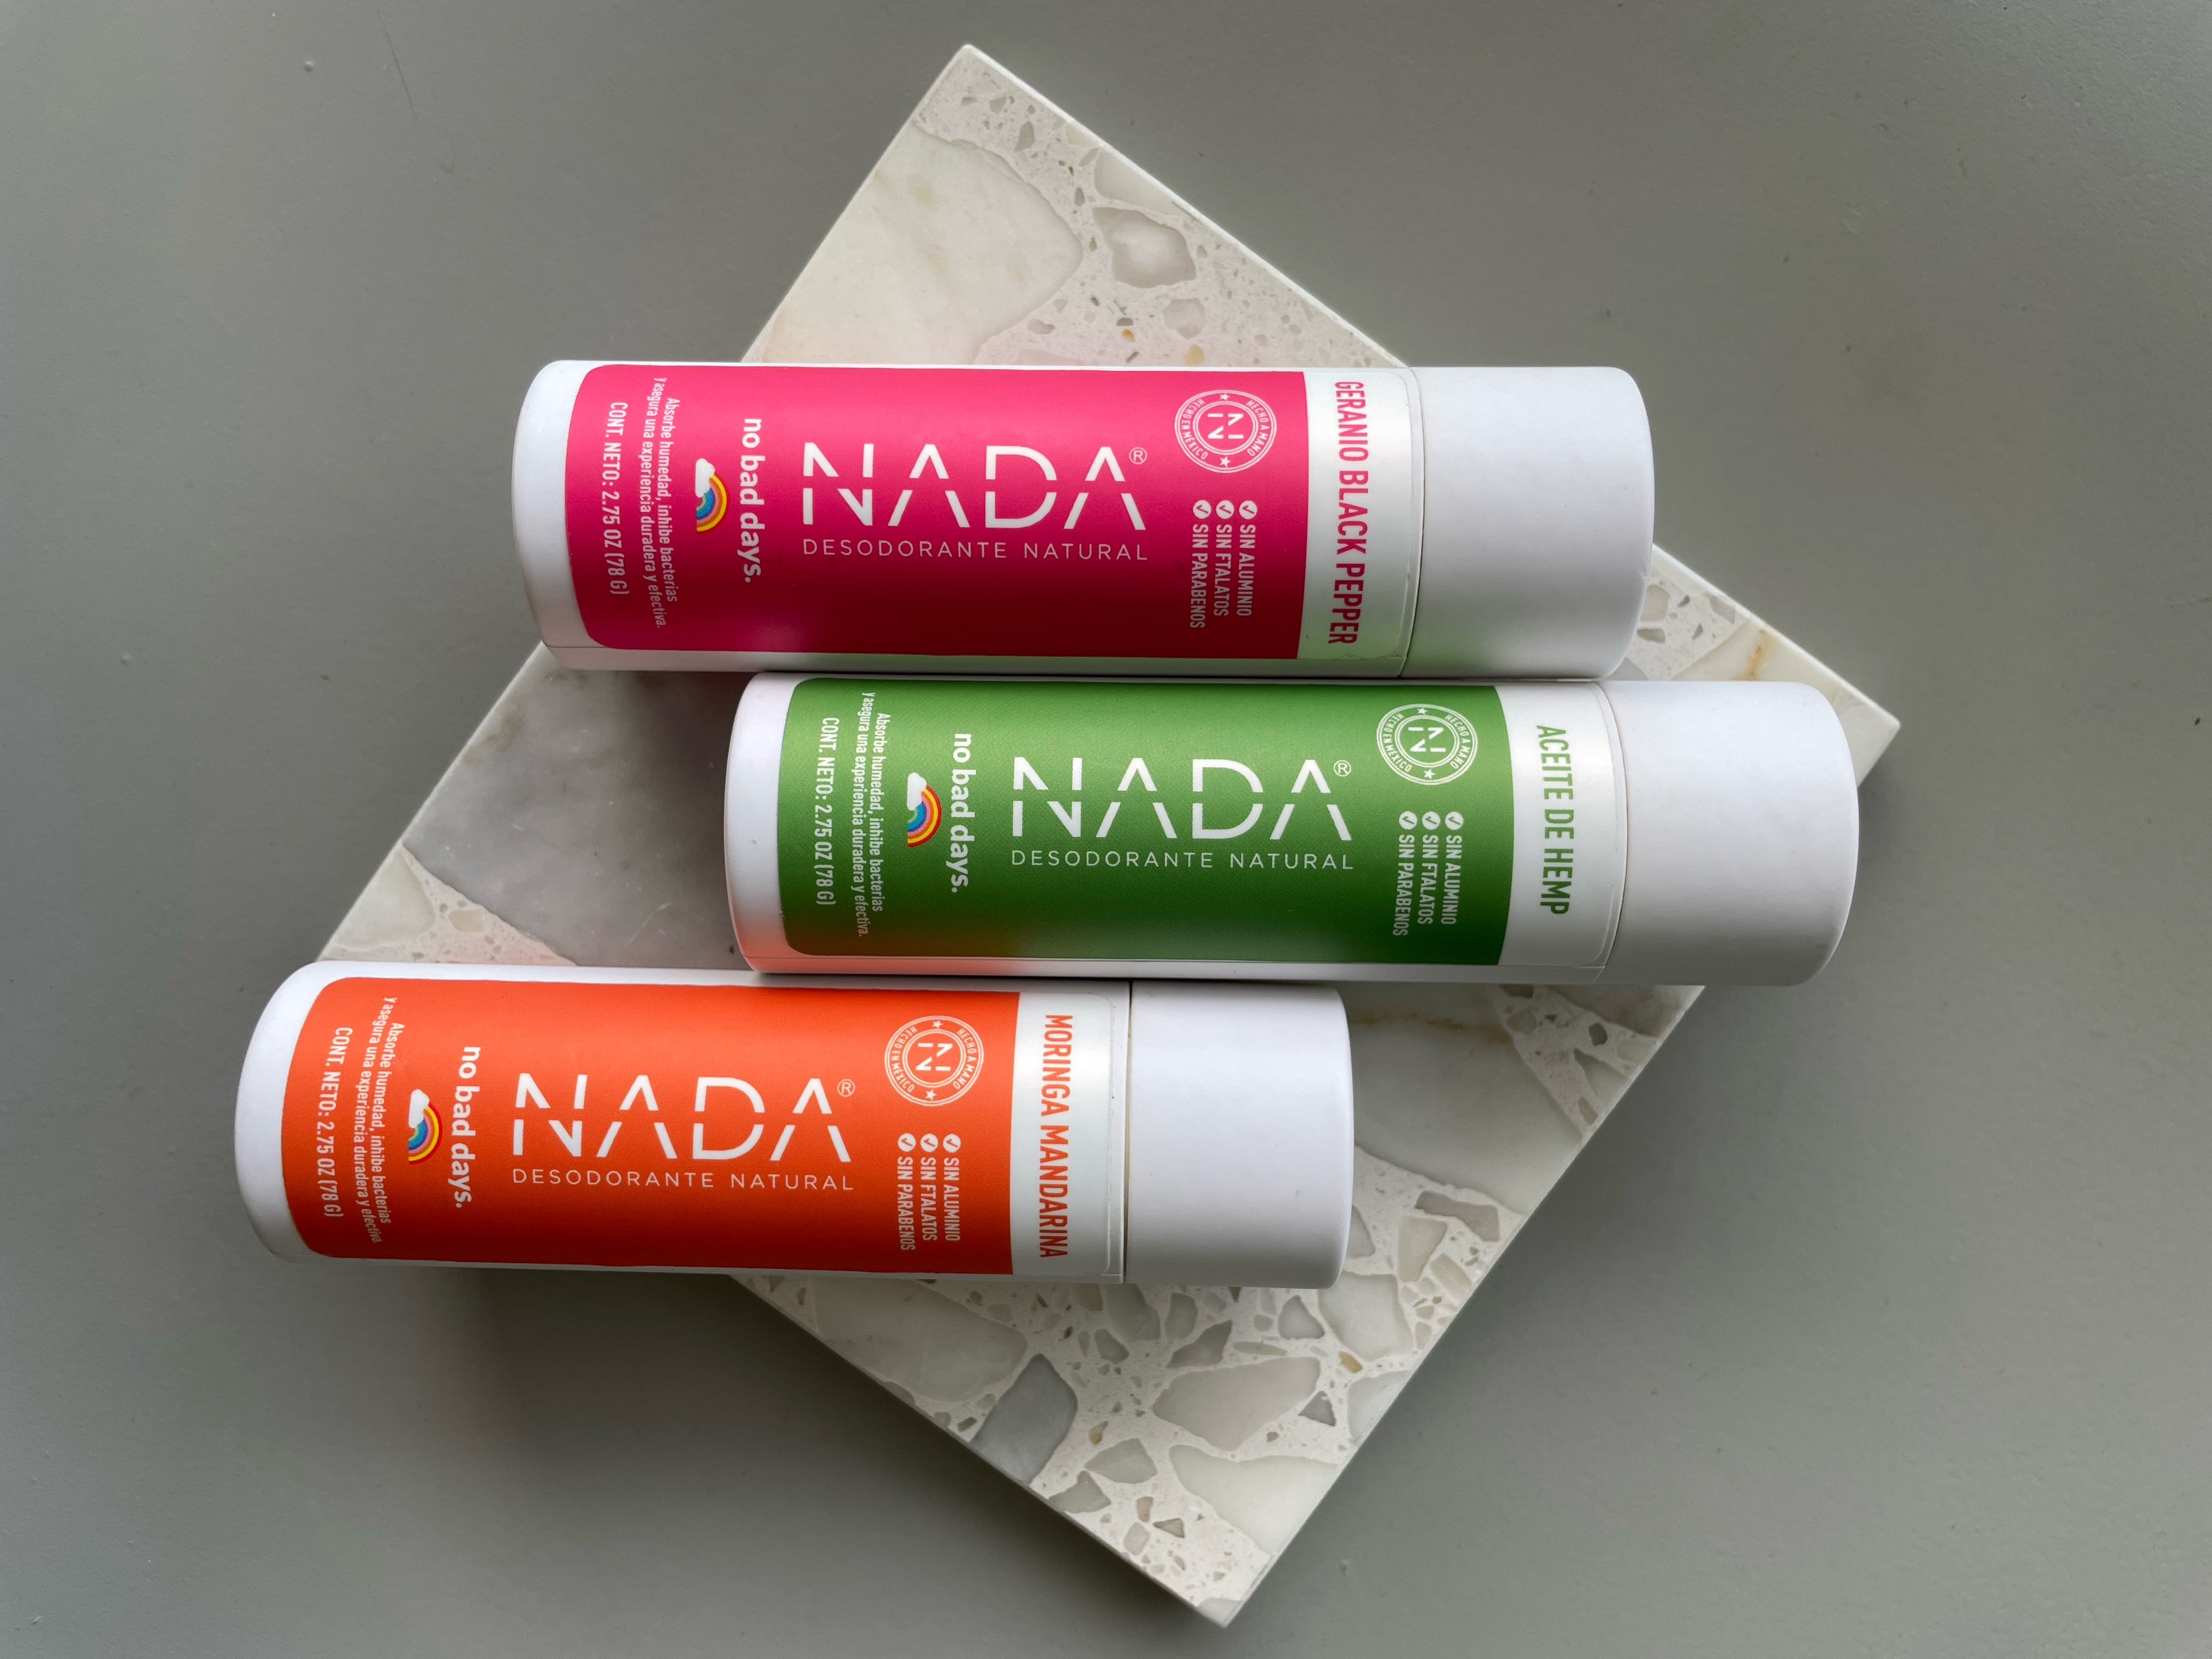 Desodorantes NADA Naturals